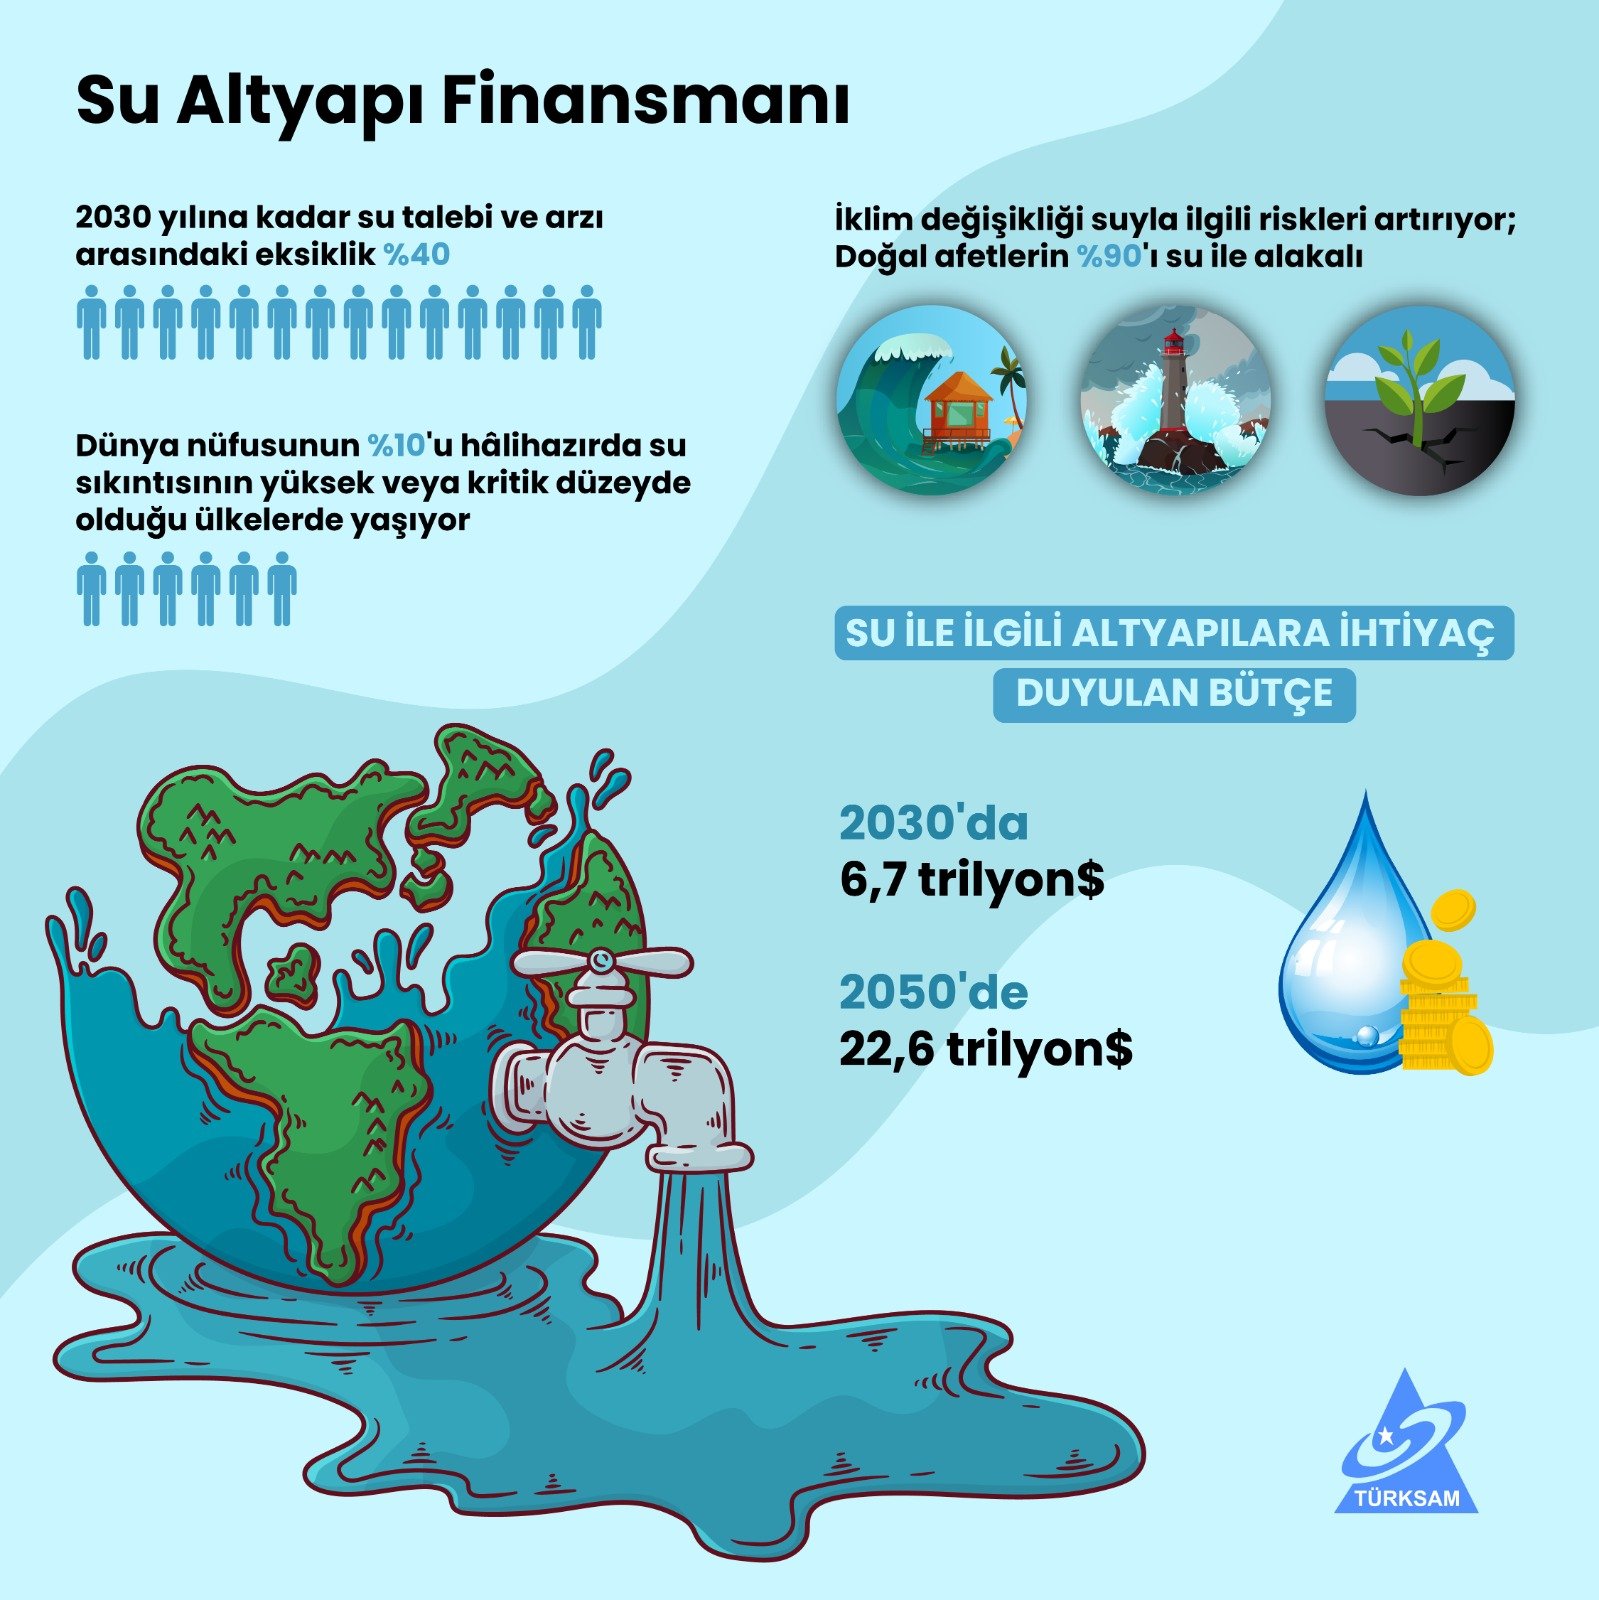 Su Altyapı Finansmanı